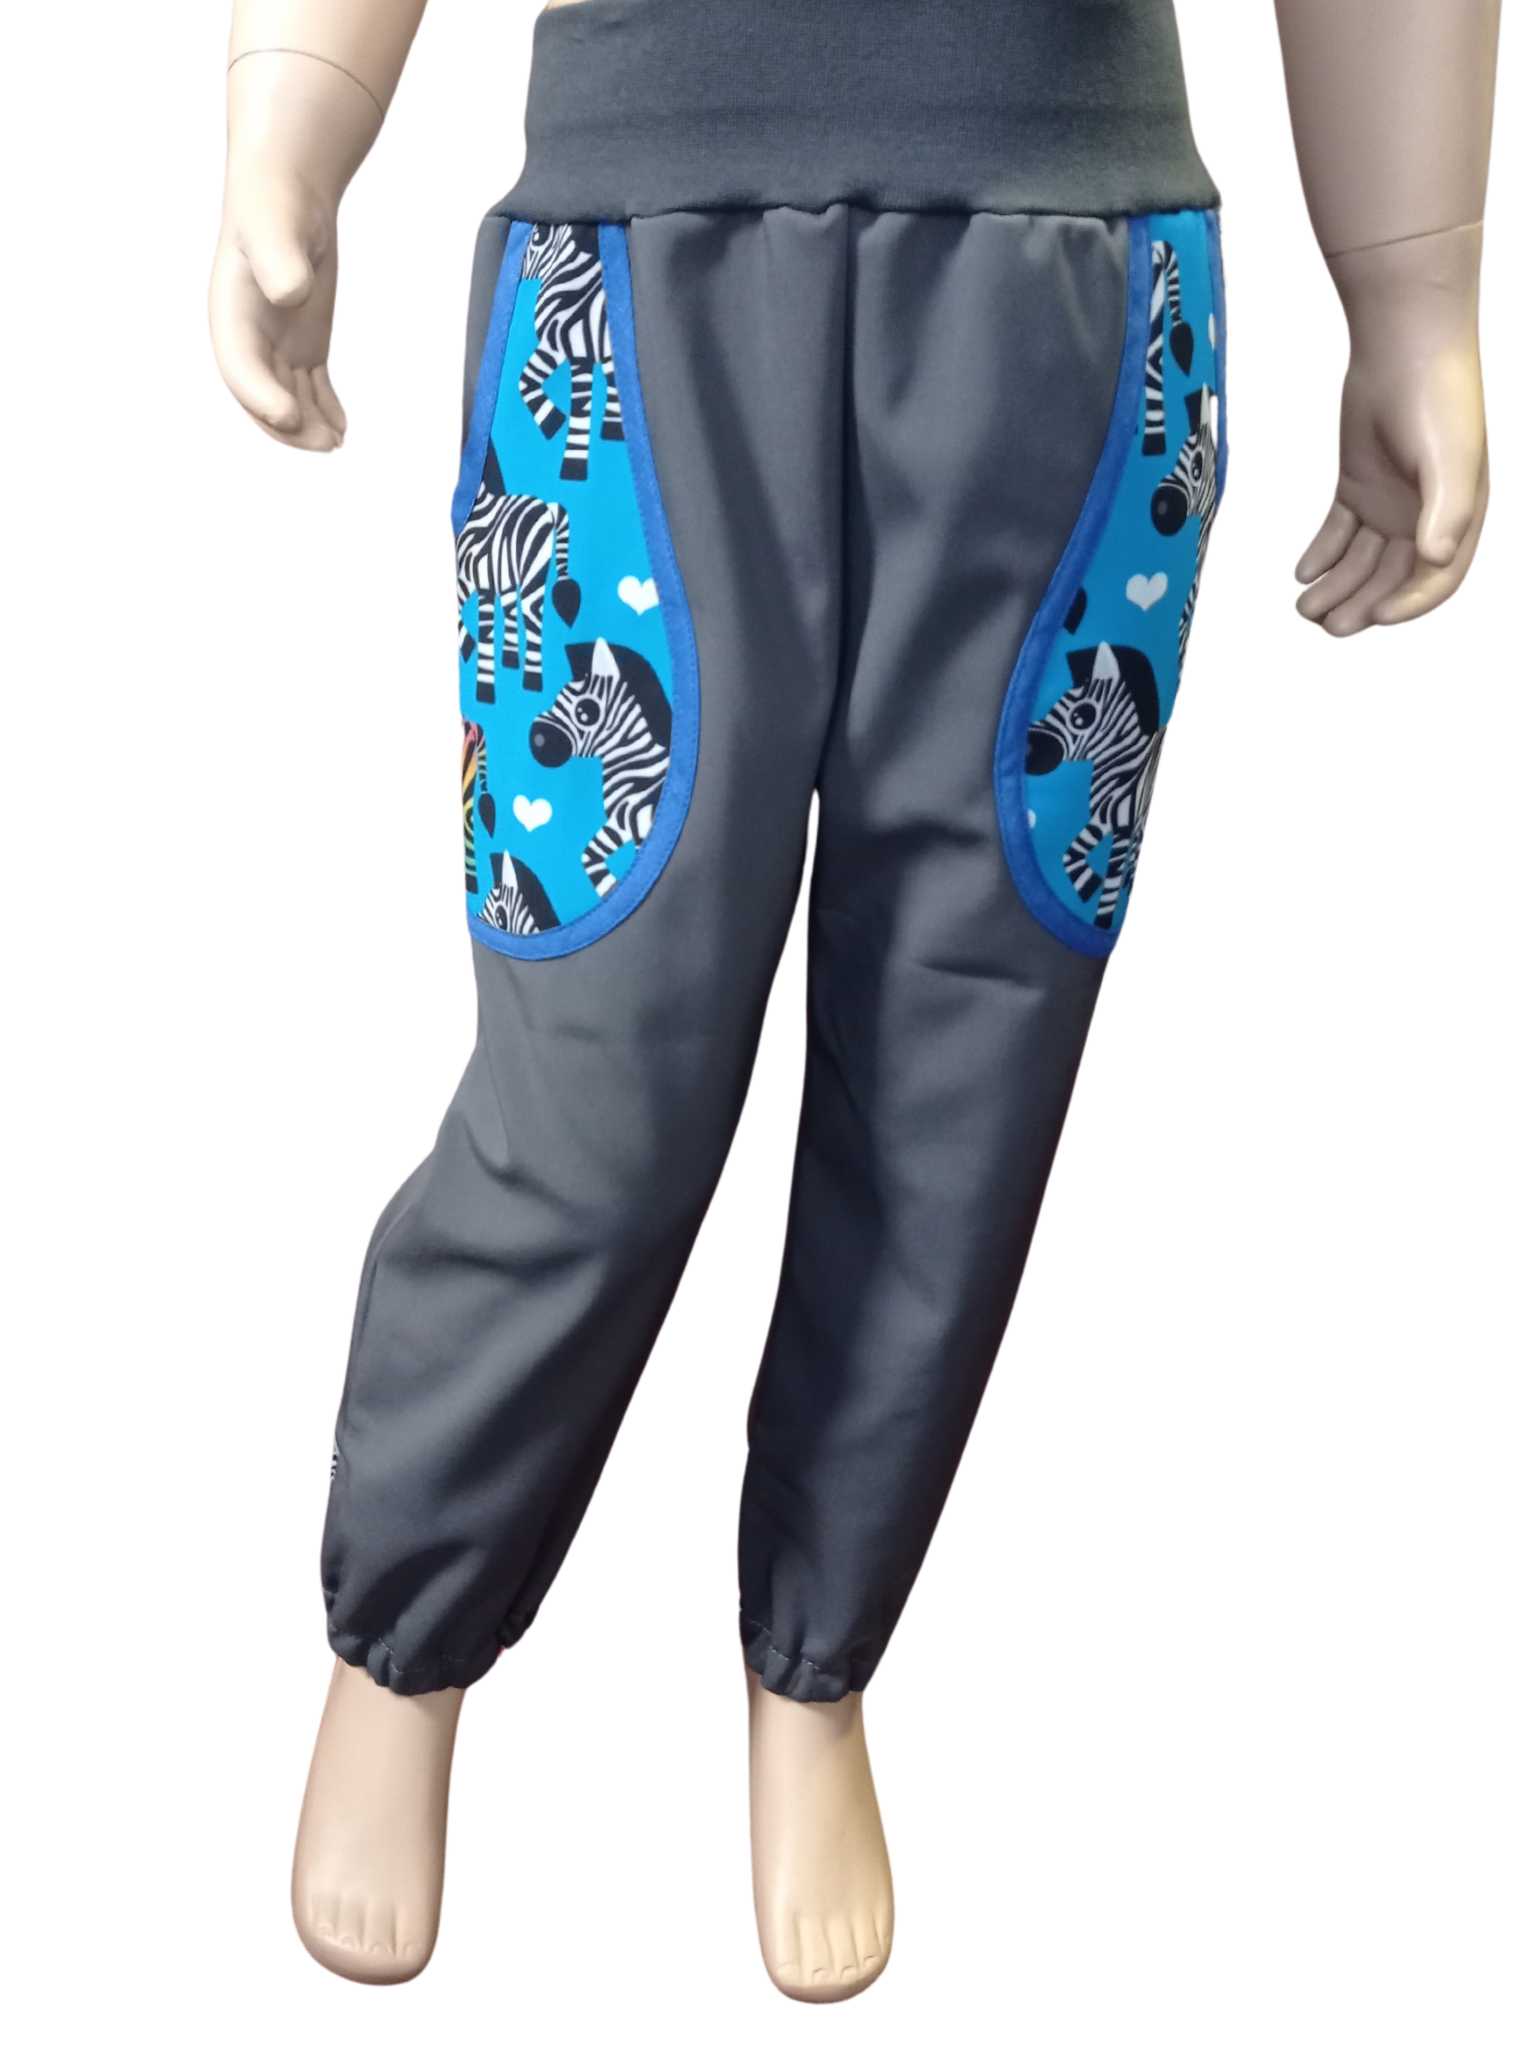 Abeli Softshellové kalhoty s flísem šedé, zebry modré Velikost: 98 s nápletem v nohavici